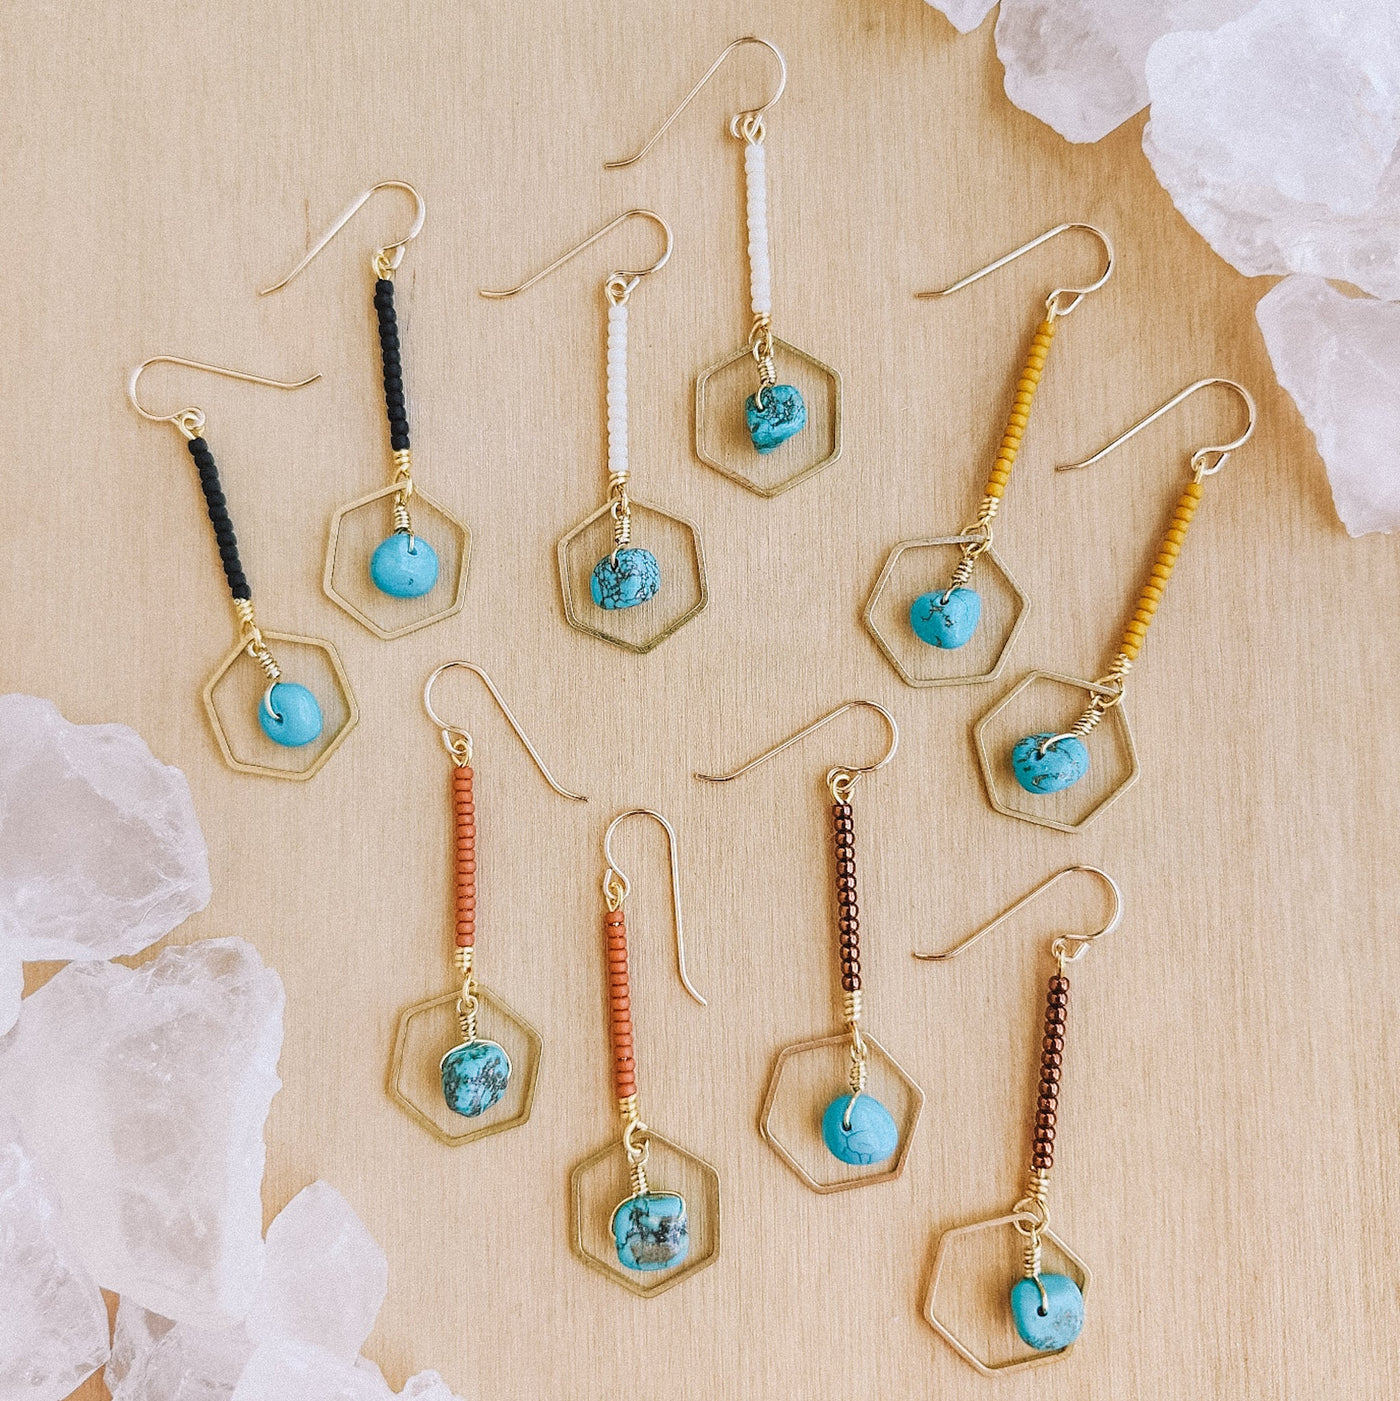 Topaz & Pearl Earrings Hexagon Drop Earrings, Turquoise & Matte Black